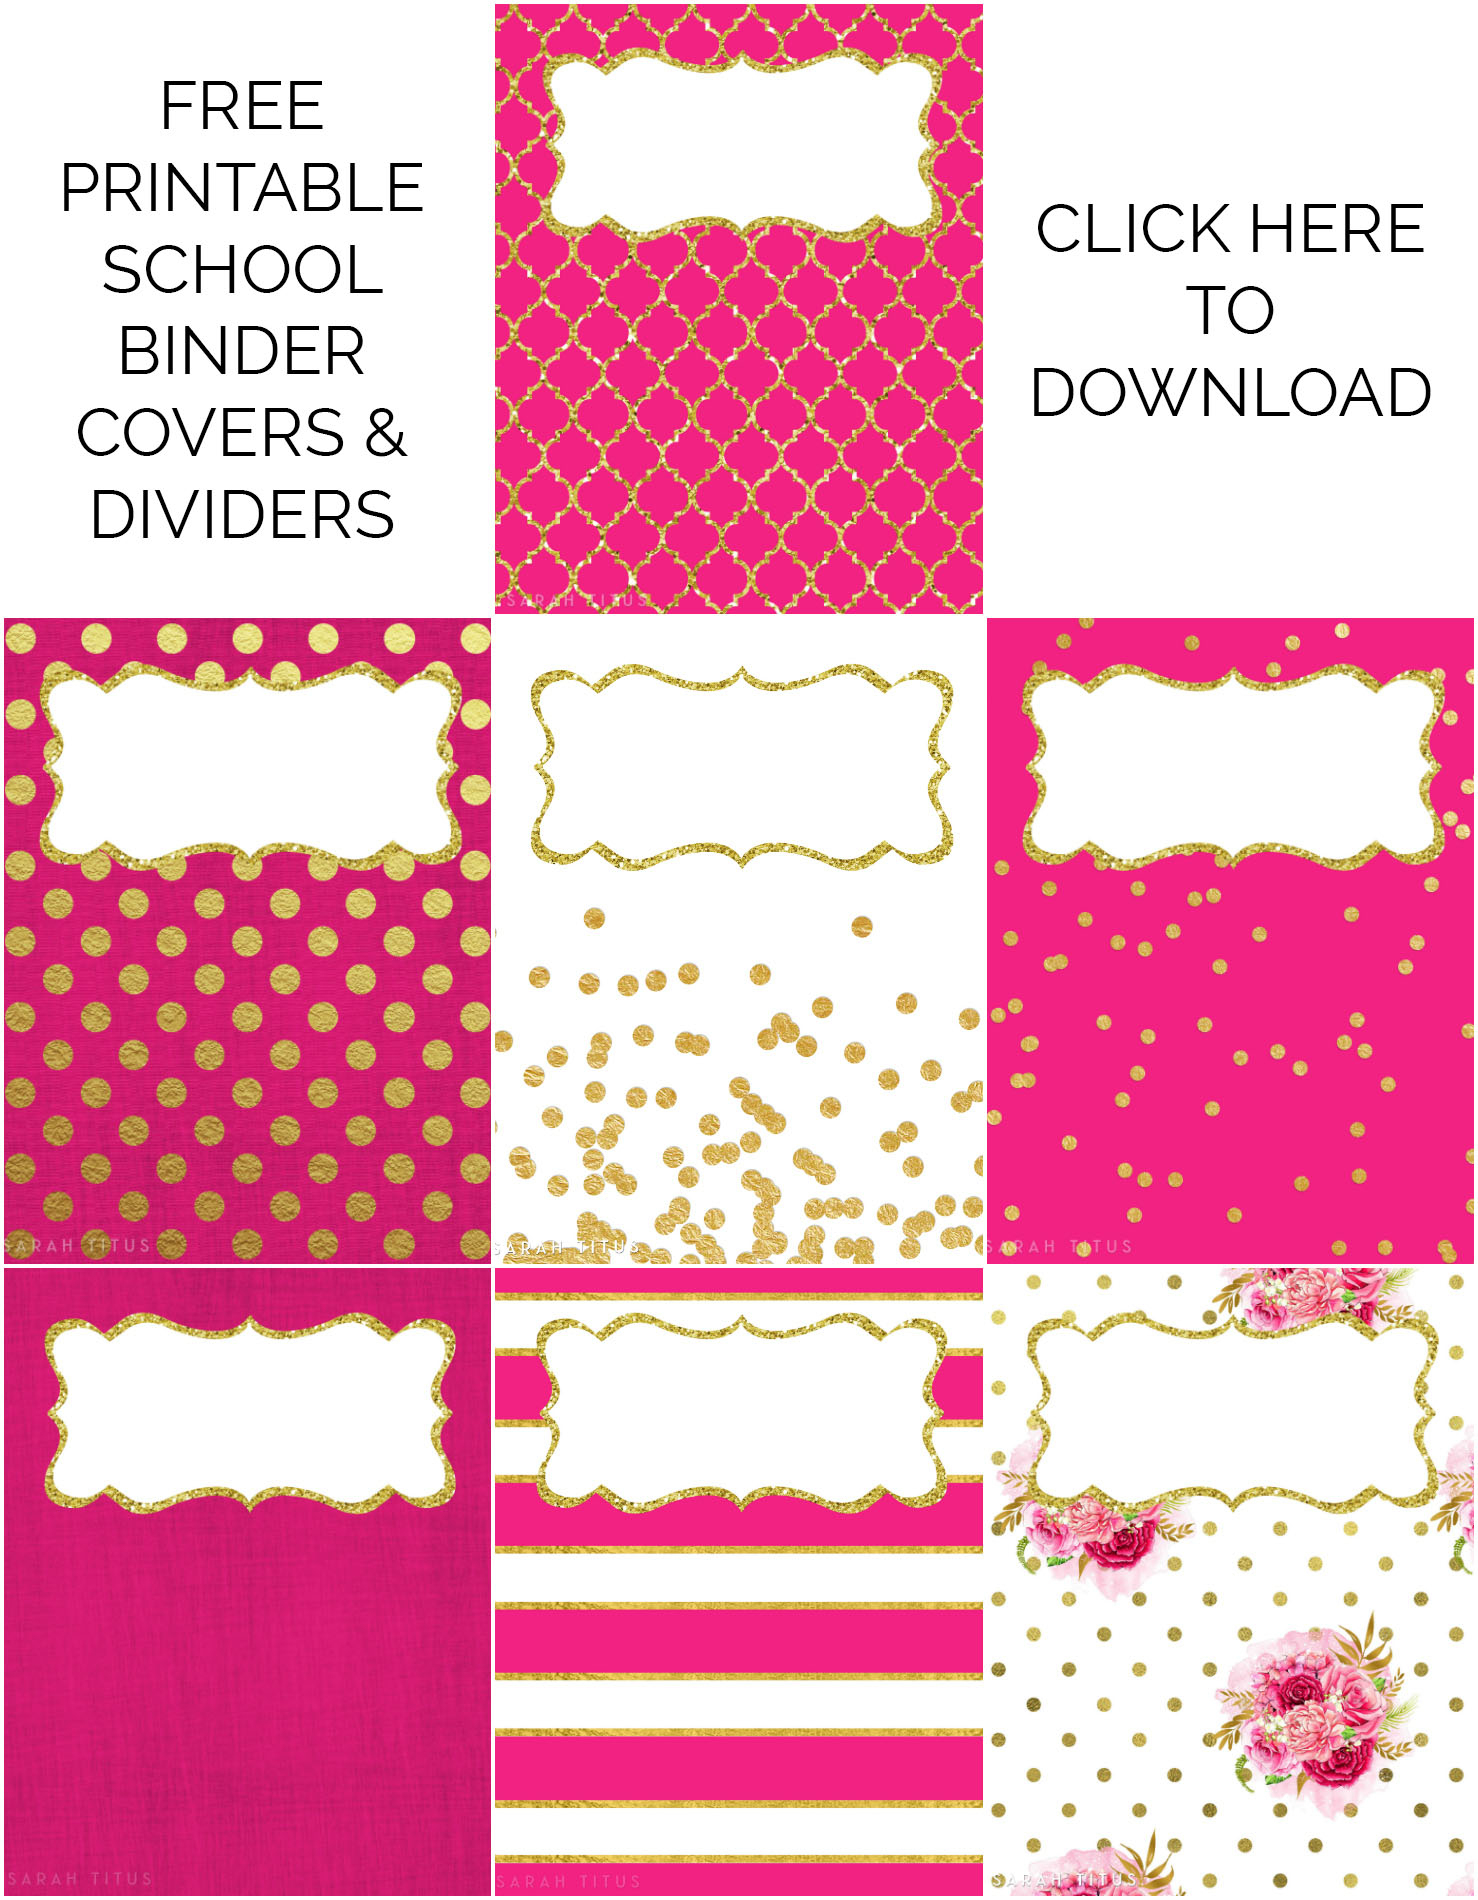 Binder Covers / Dividers Free Printables - Sarah Titus - Free Printable Binder Covers